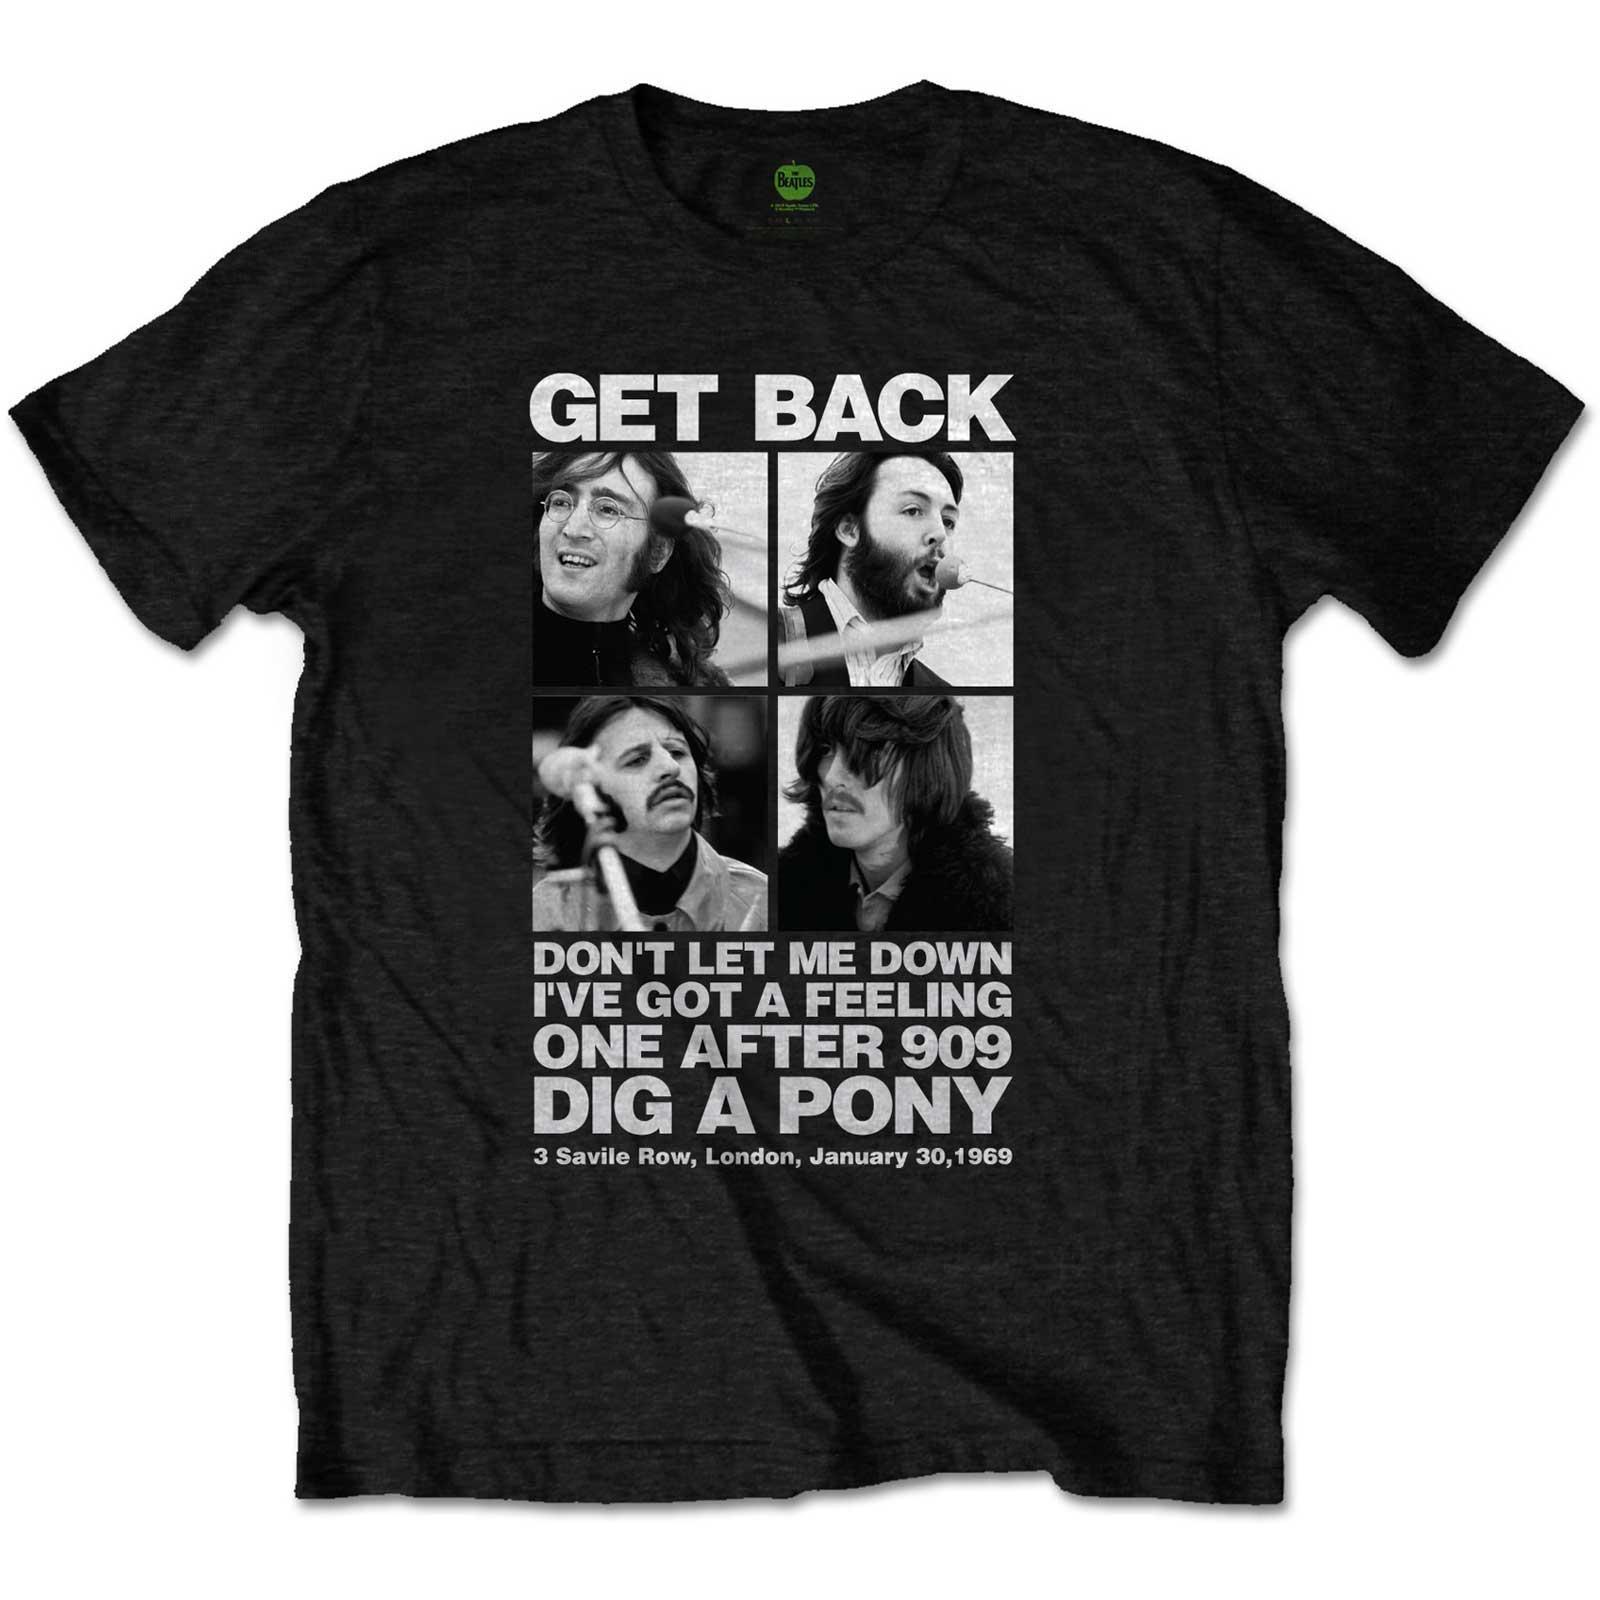 (ザ・ビートルズ) The Beatles オフィシャル商品 ユニセックス 3 Savile Row Tシャツ コットン 半袖 トップス 【海外通販】